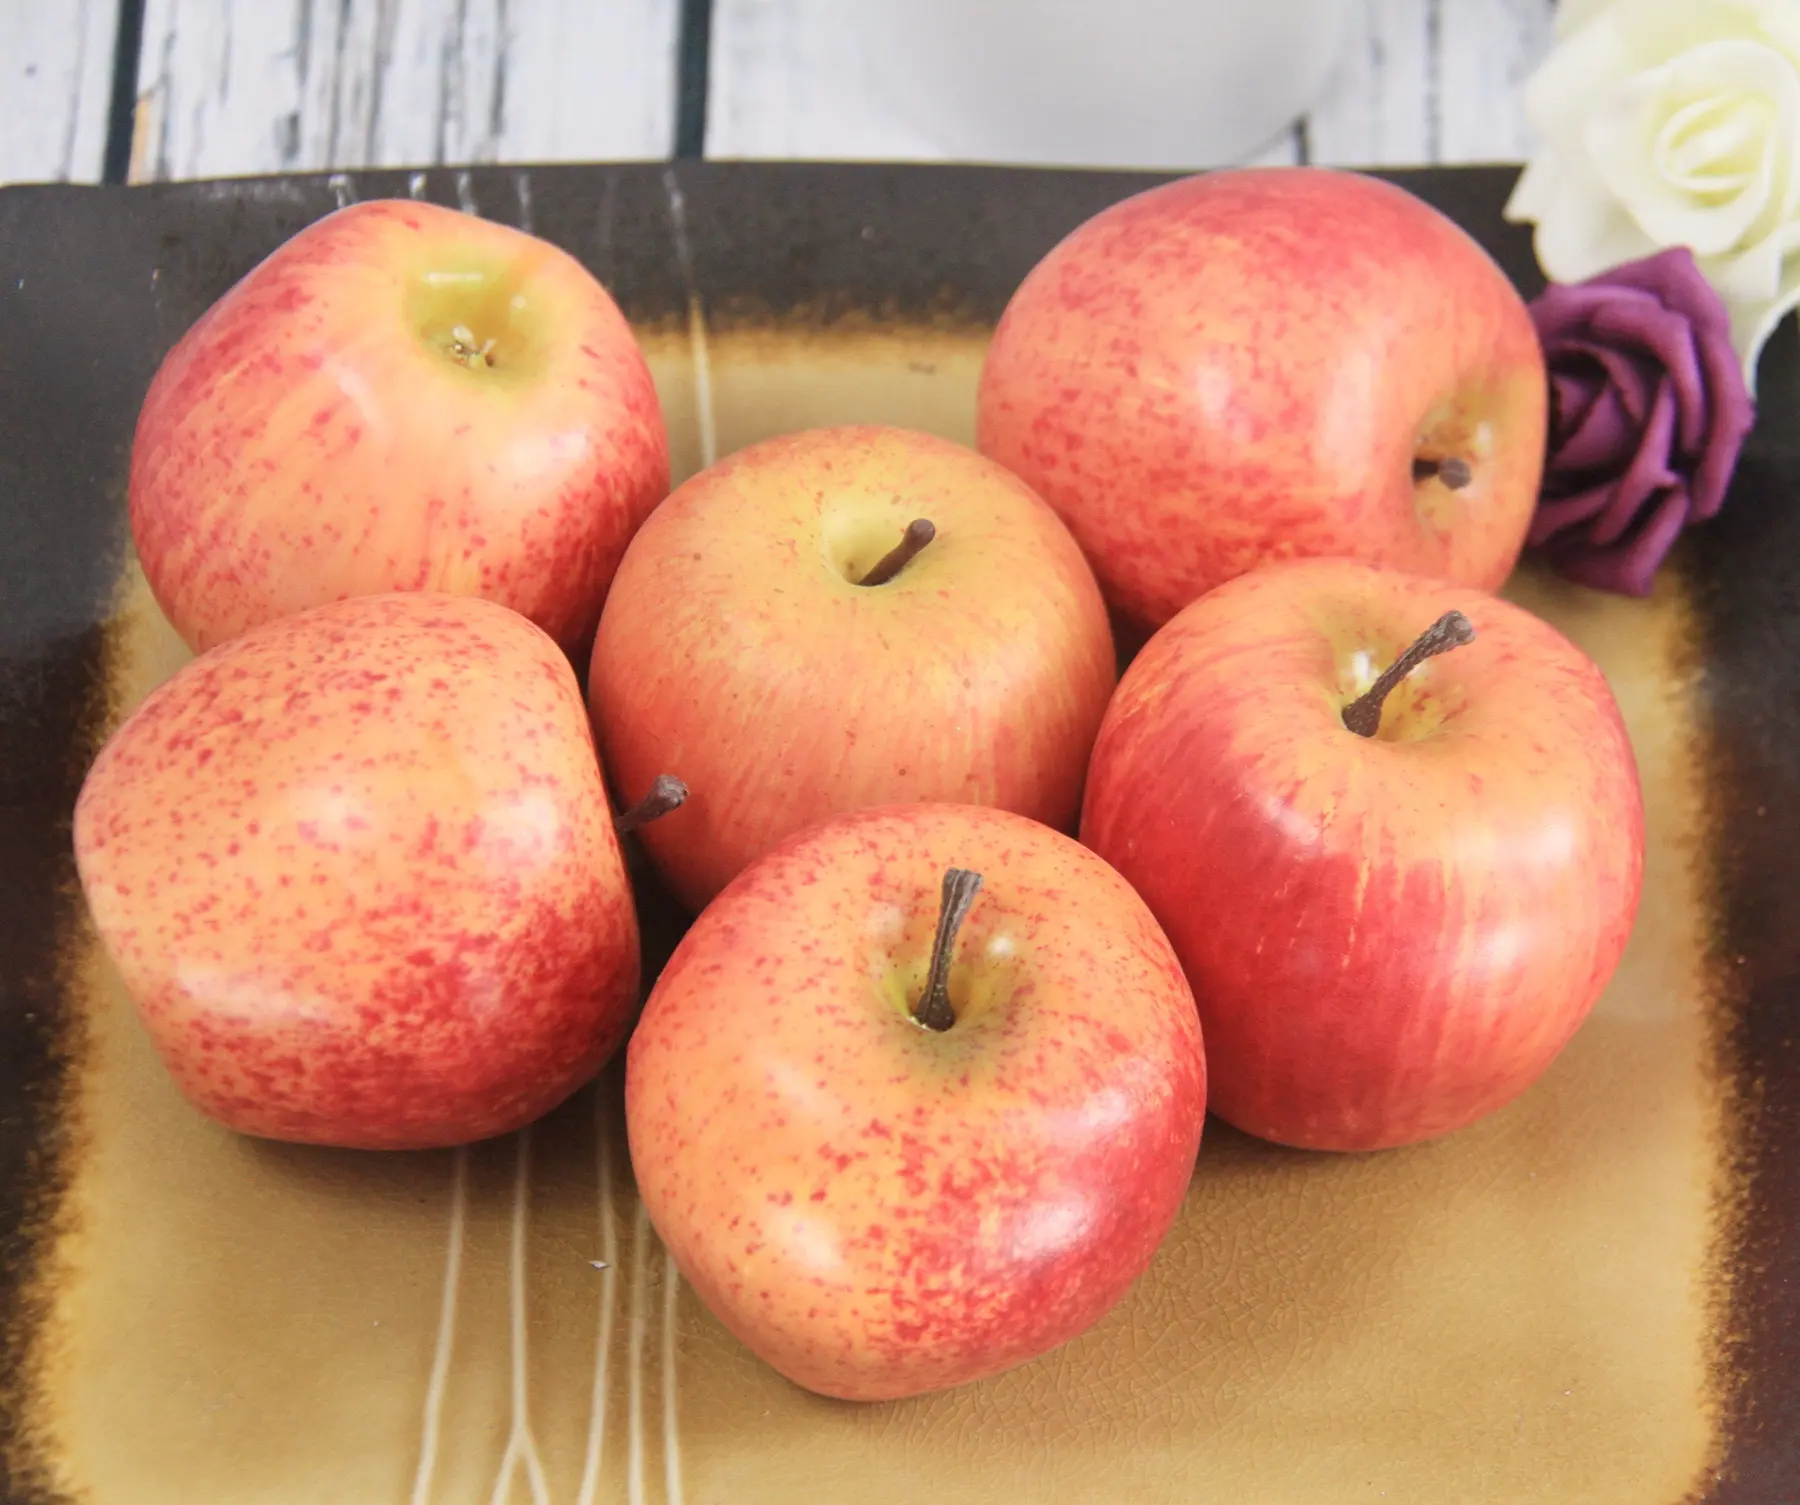 Simulazione di frutta artificiale apple fuji apple schiuma materiale colorato mela